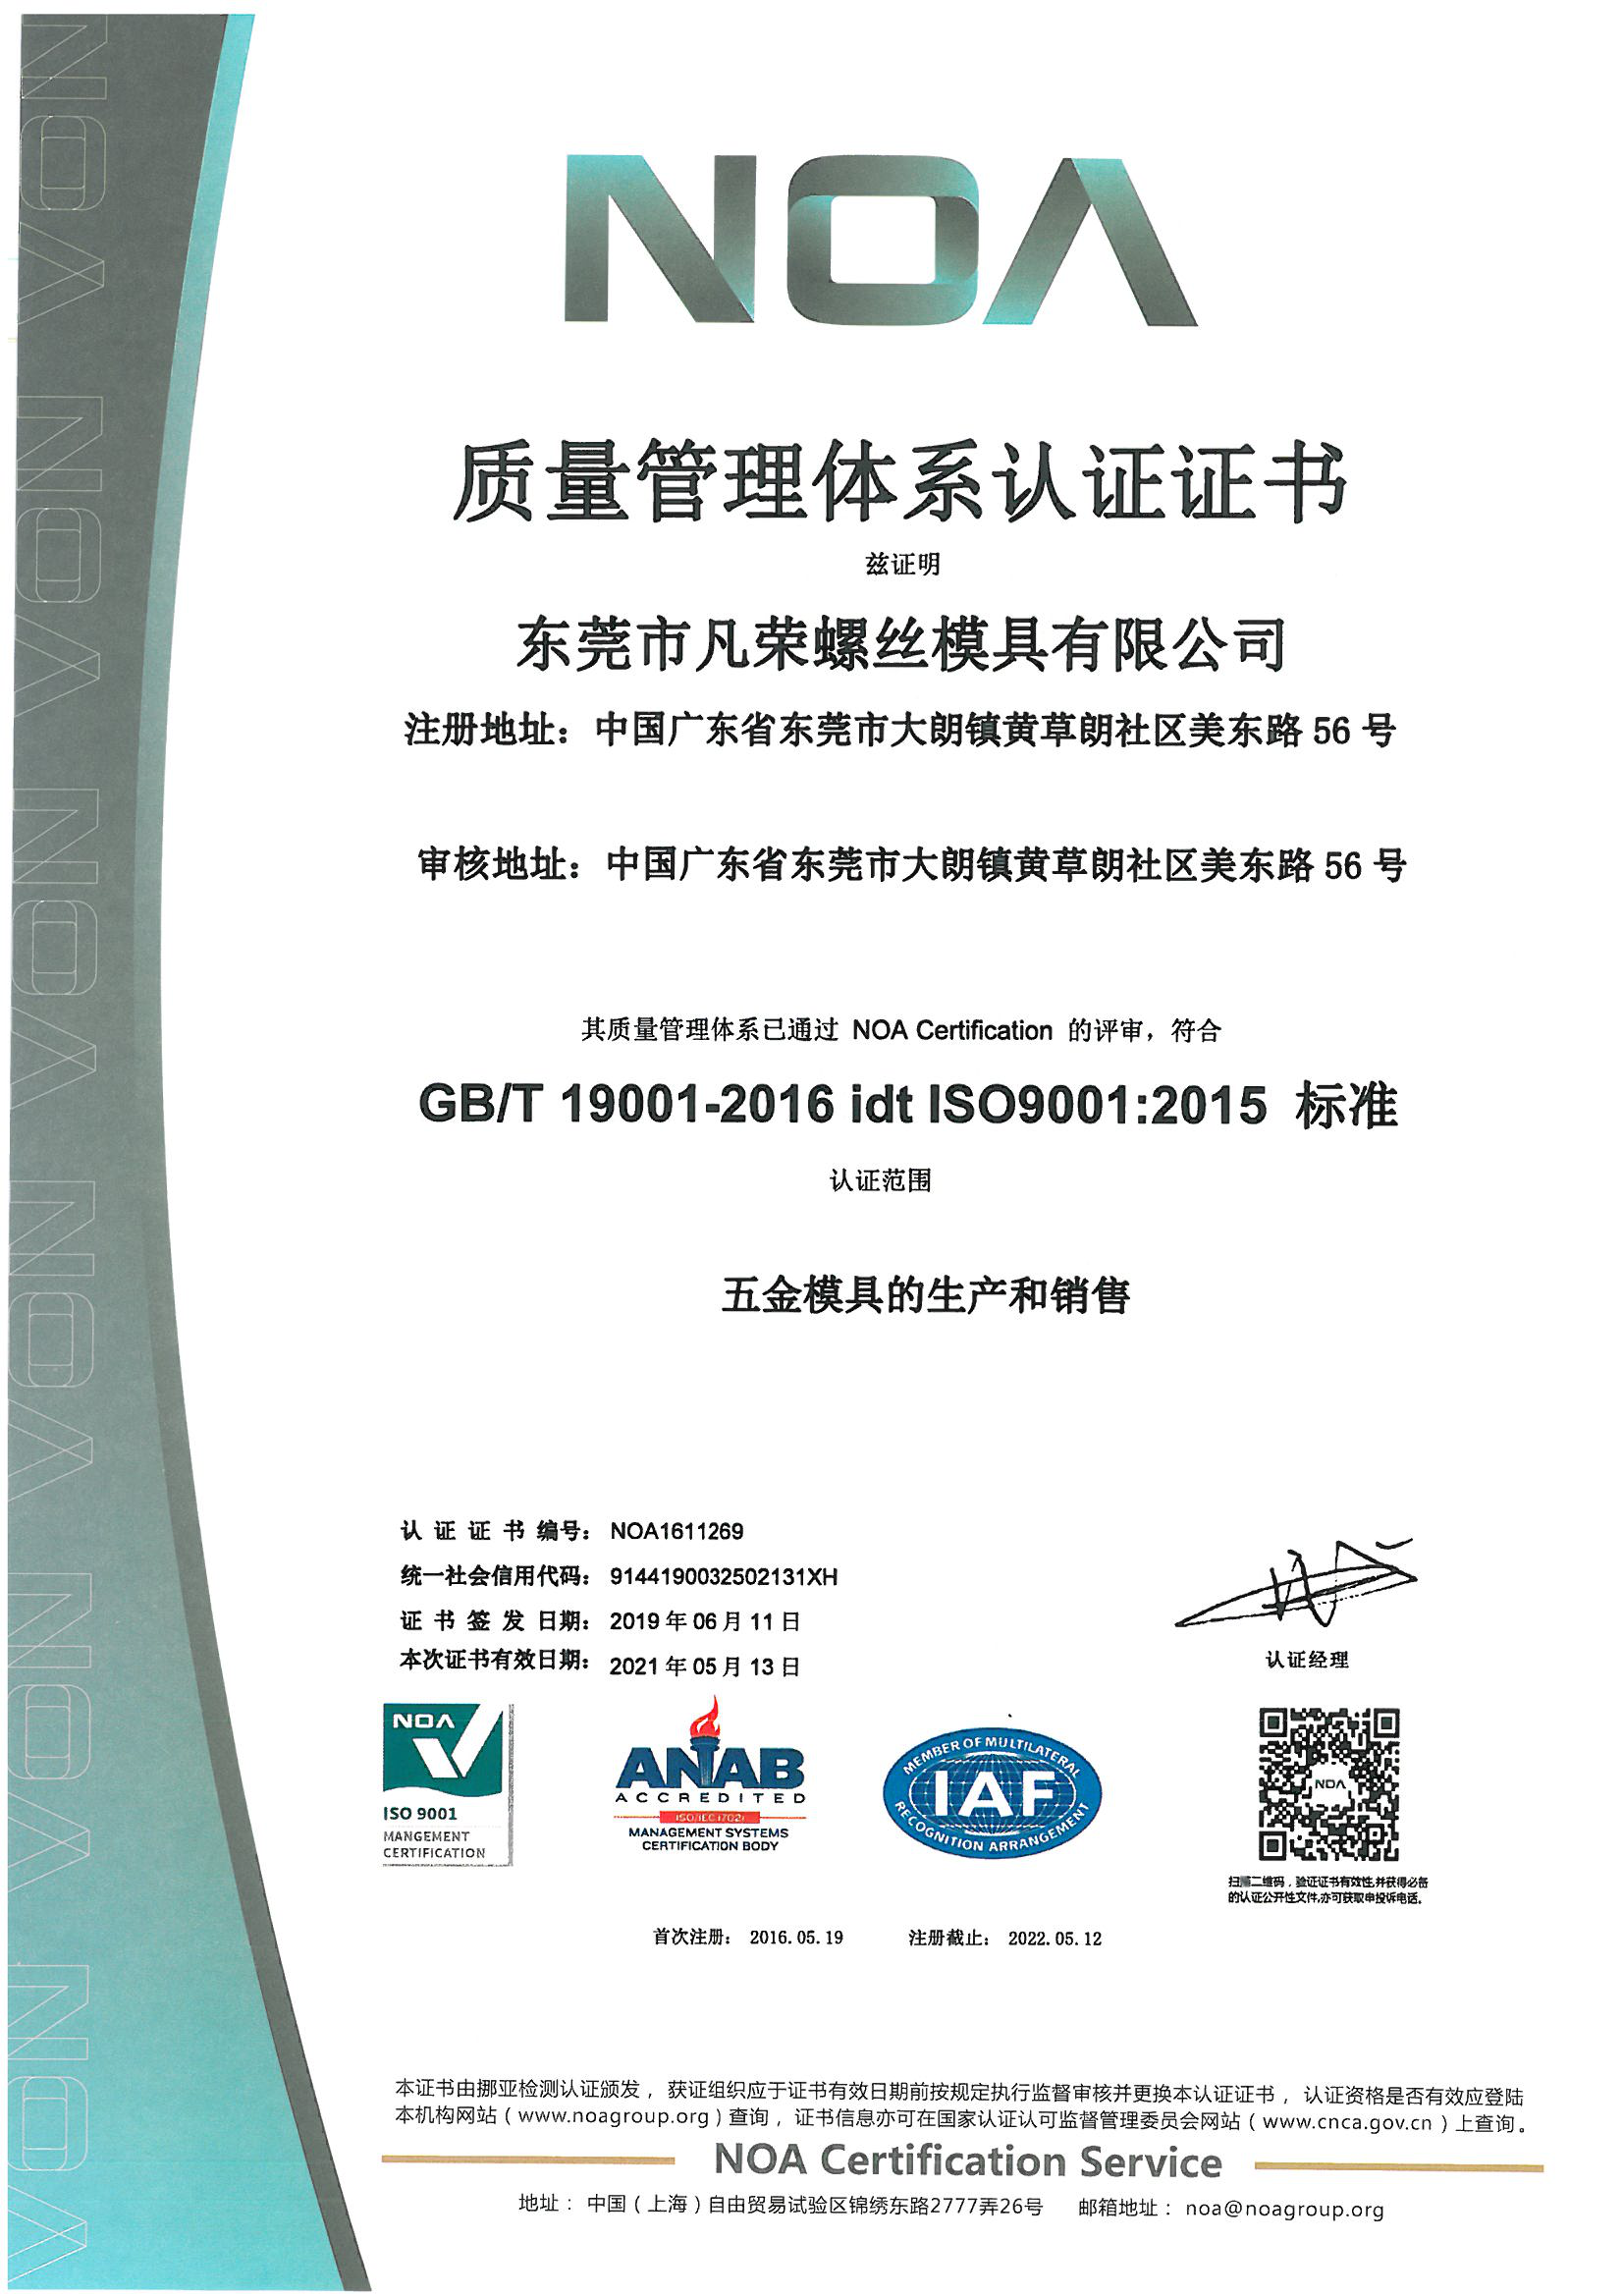 东莞凡荣顺利完成ISO国际质量认证的年审和换证工作